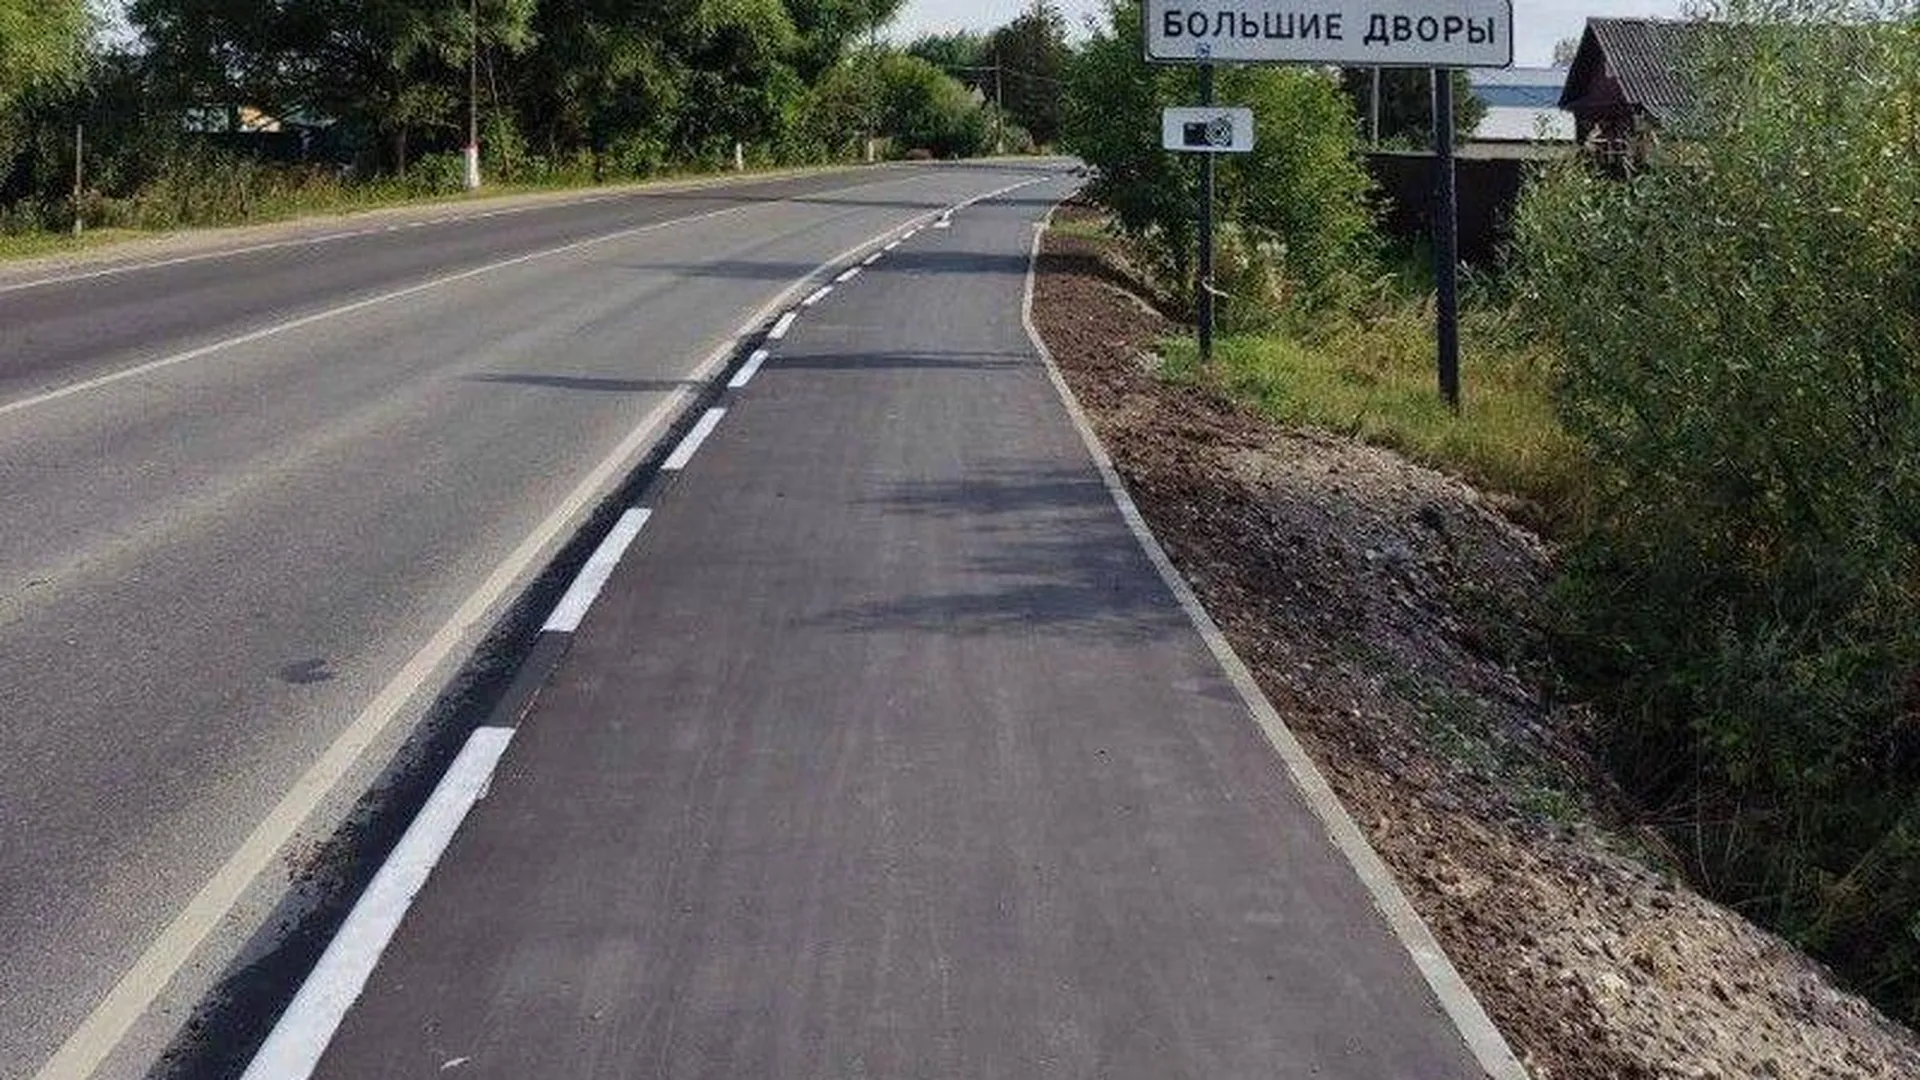 Строительство новых тротуаров вдоль региональных дорог началось в Подмосковье